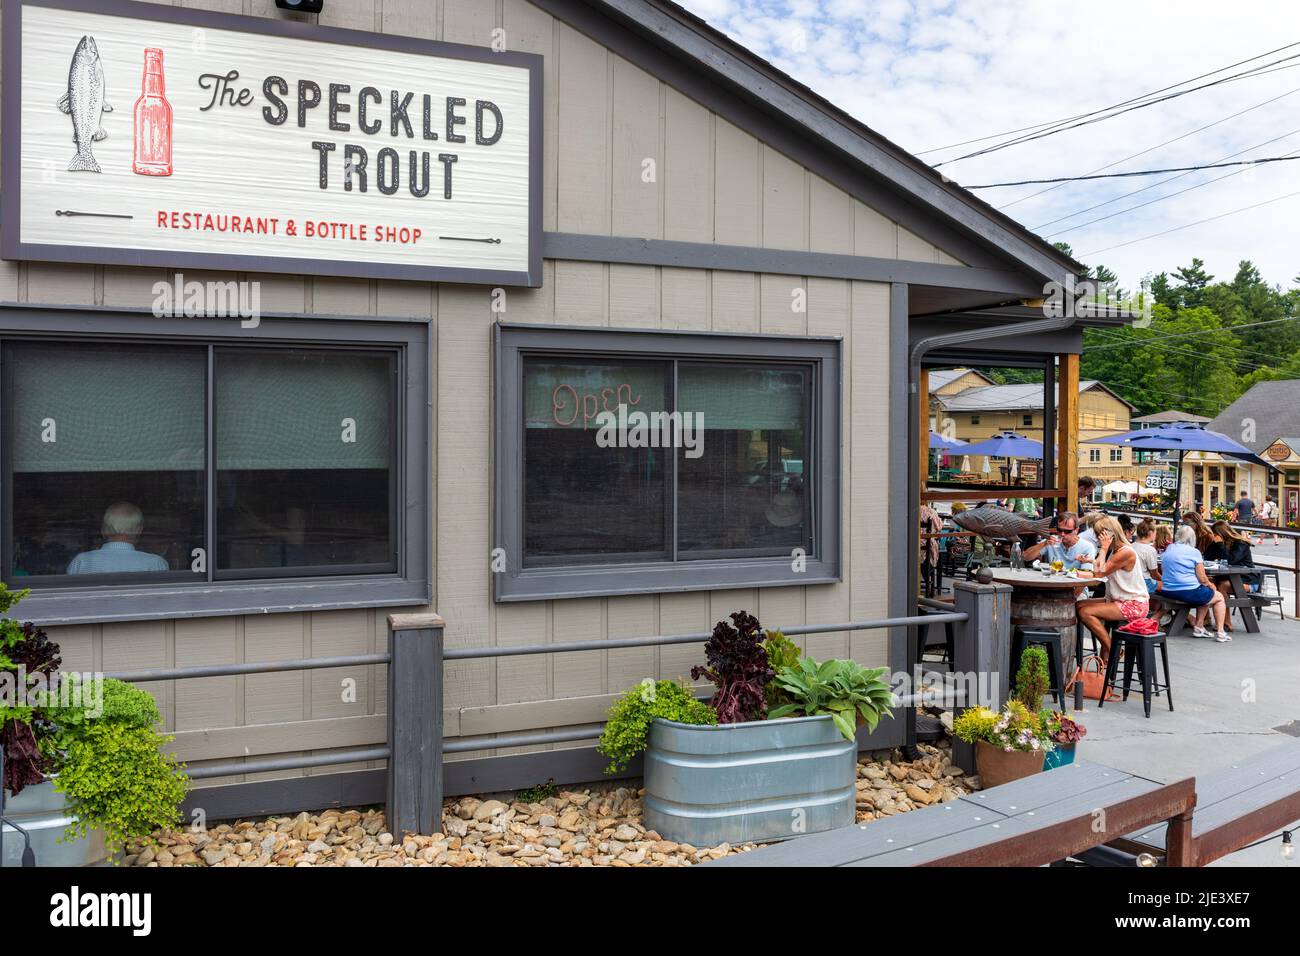 BLOWING ROCK, NC, EE.UU.-20 DE JUNIO de 2022: El restaurante Speckled Trout y tienda de botellas, con comedor al aire libre. Edificio, señalización y clientes. Foto de stock